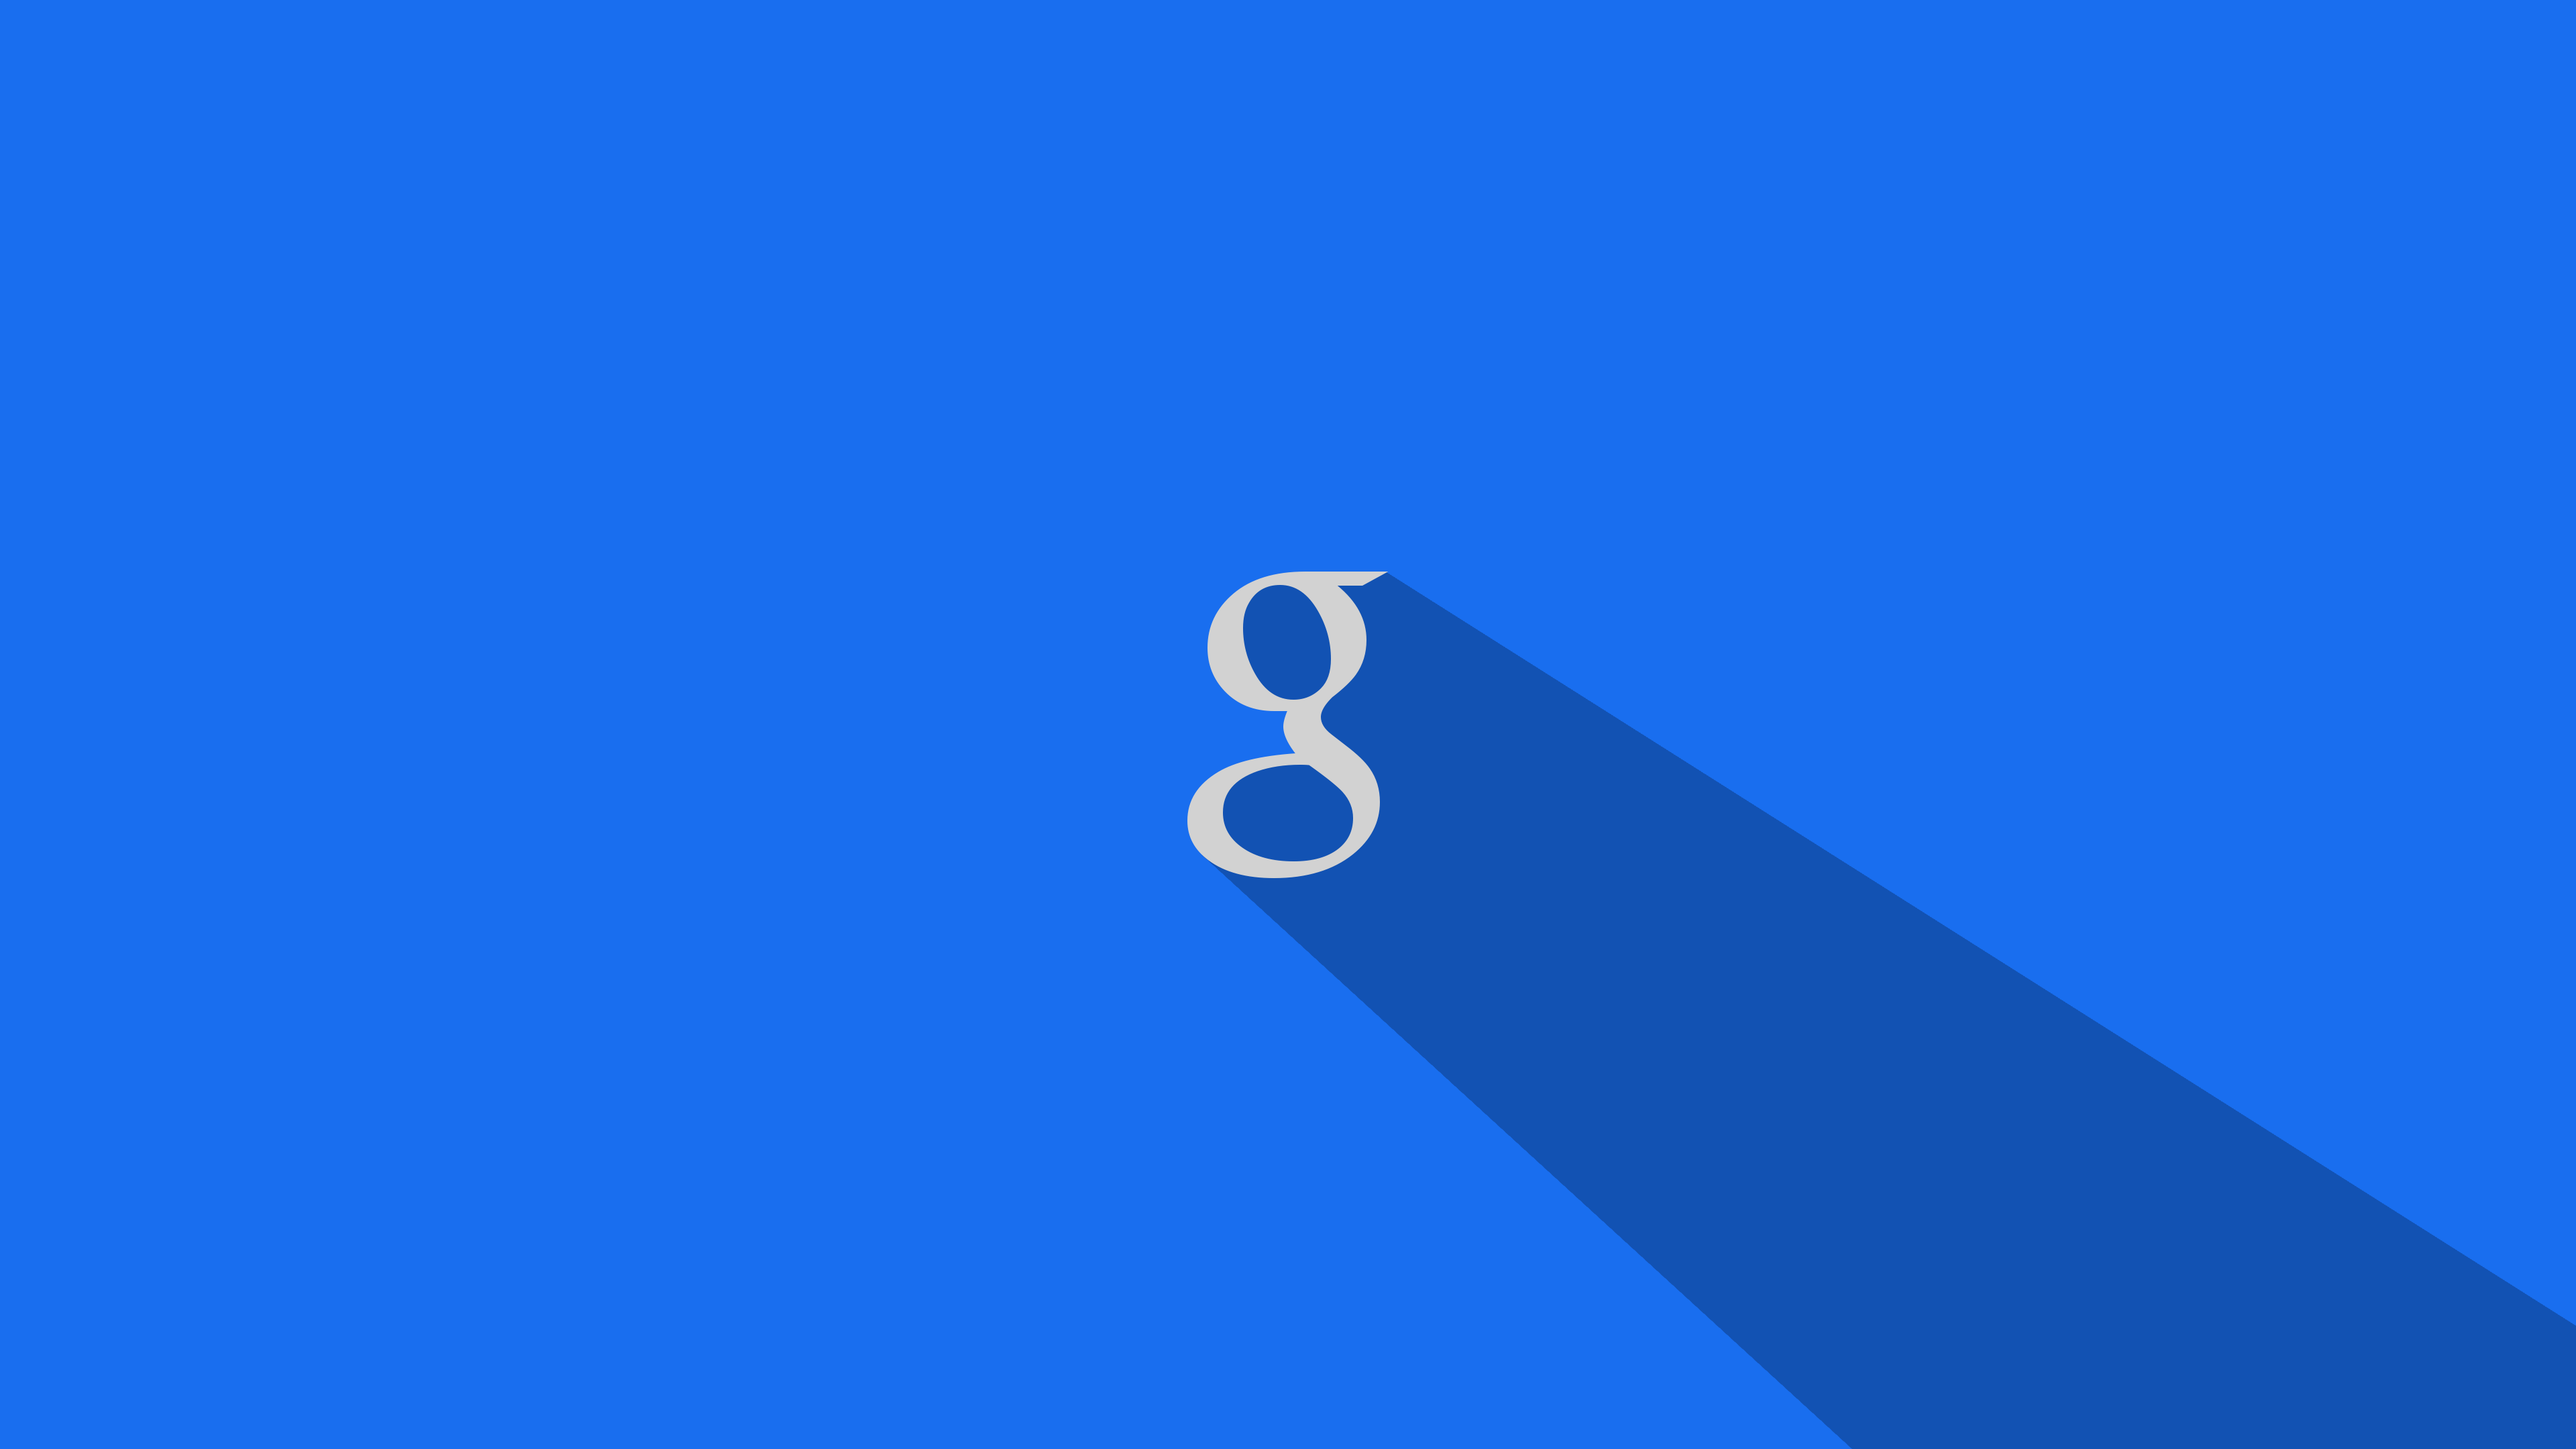 sfondo di google per pc,blu,blu cobalto,giorno,blu elettrico,testo